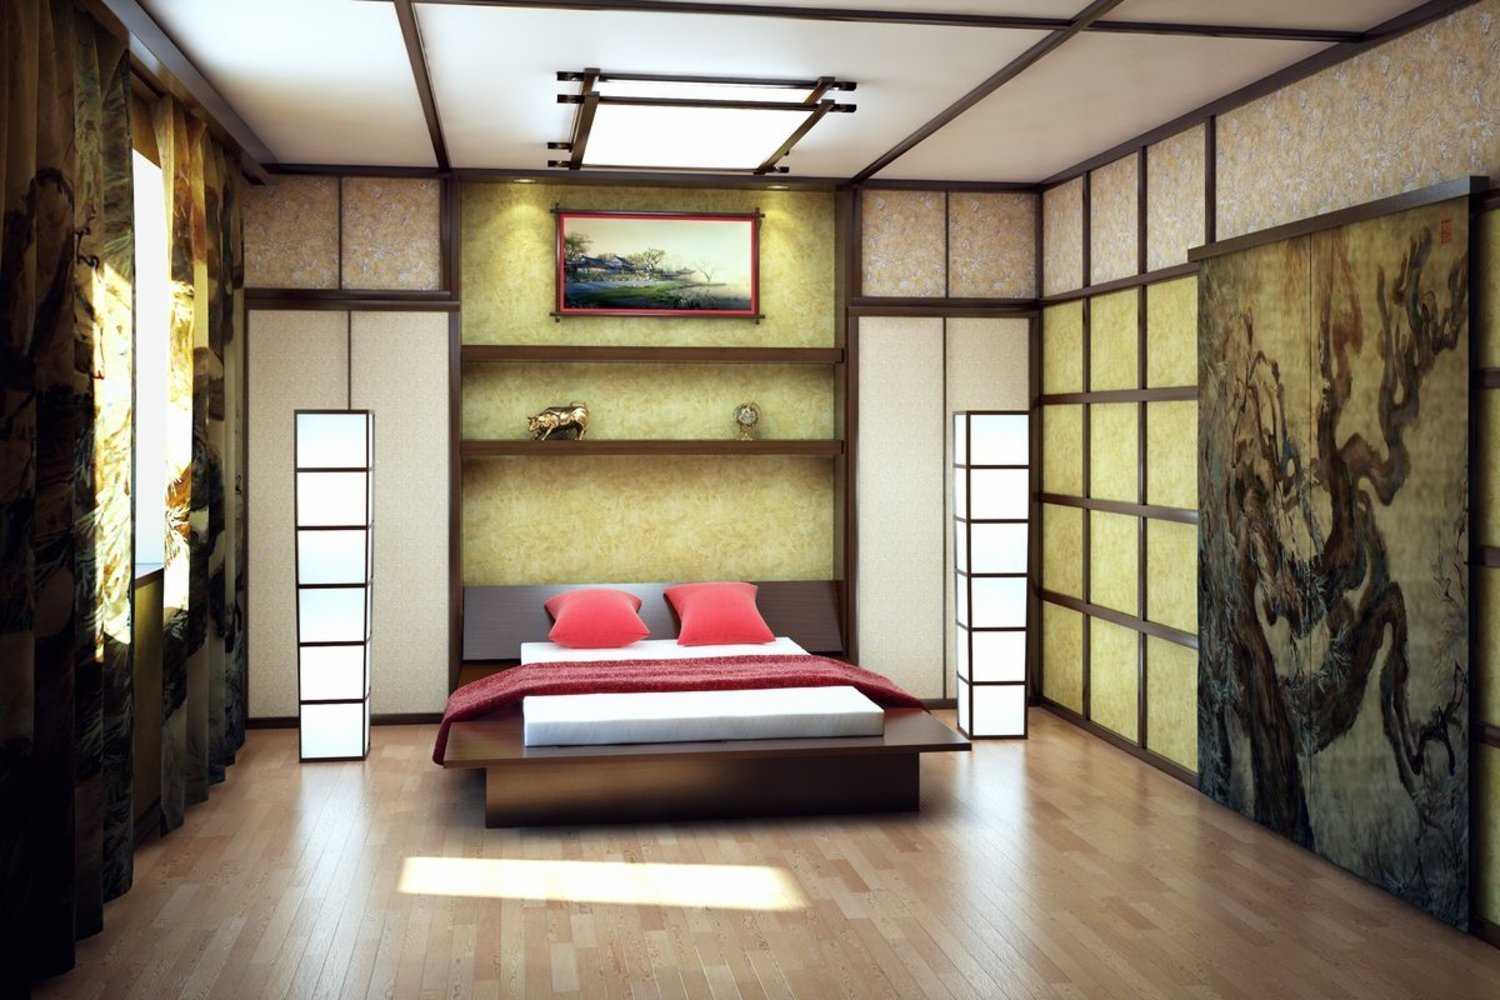 Рассказываем, на что обратить внимание при оформлении квартиры в японском стиле: отделка, выбор мебели, подбор декора и аксессуаров